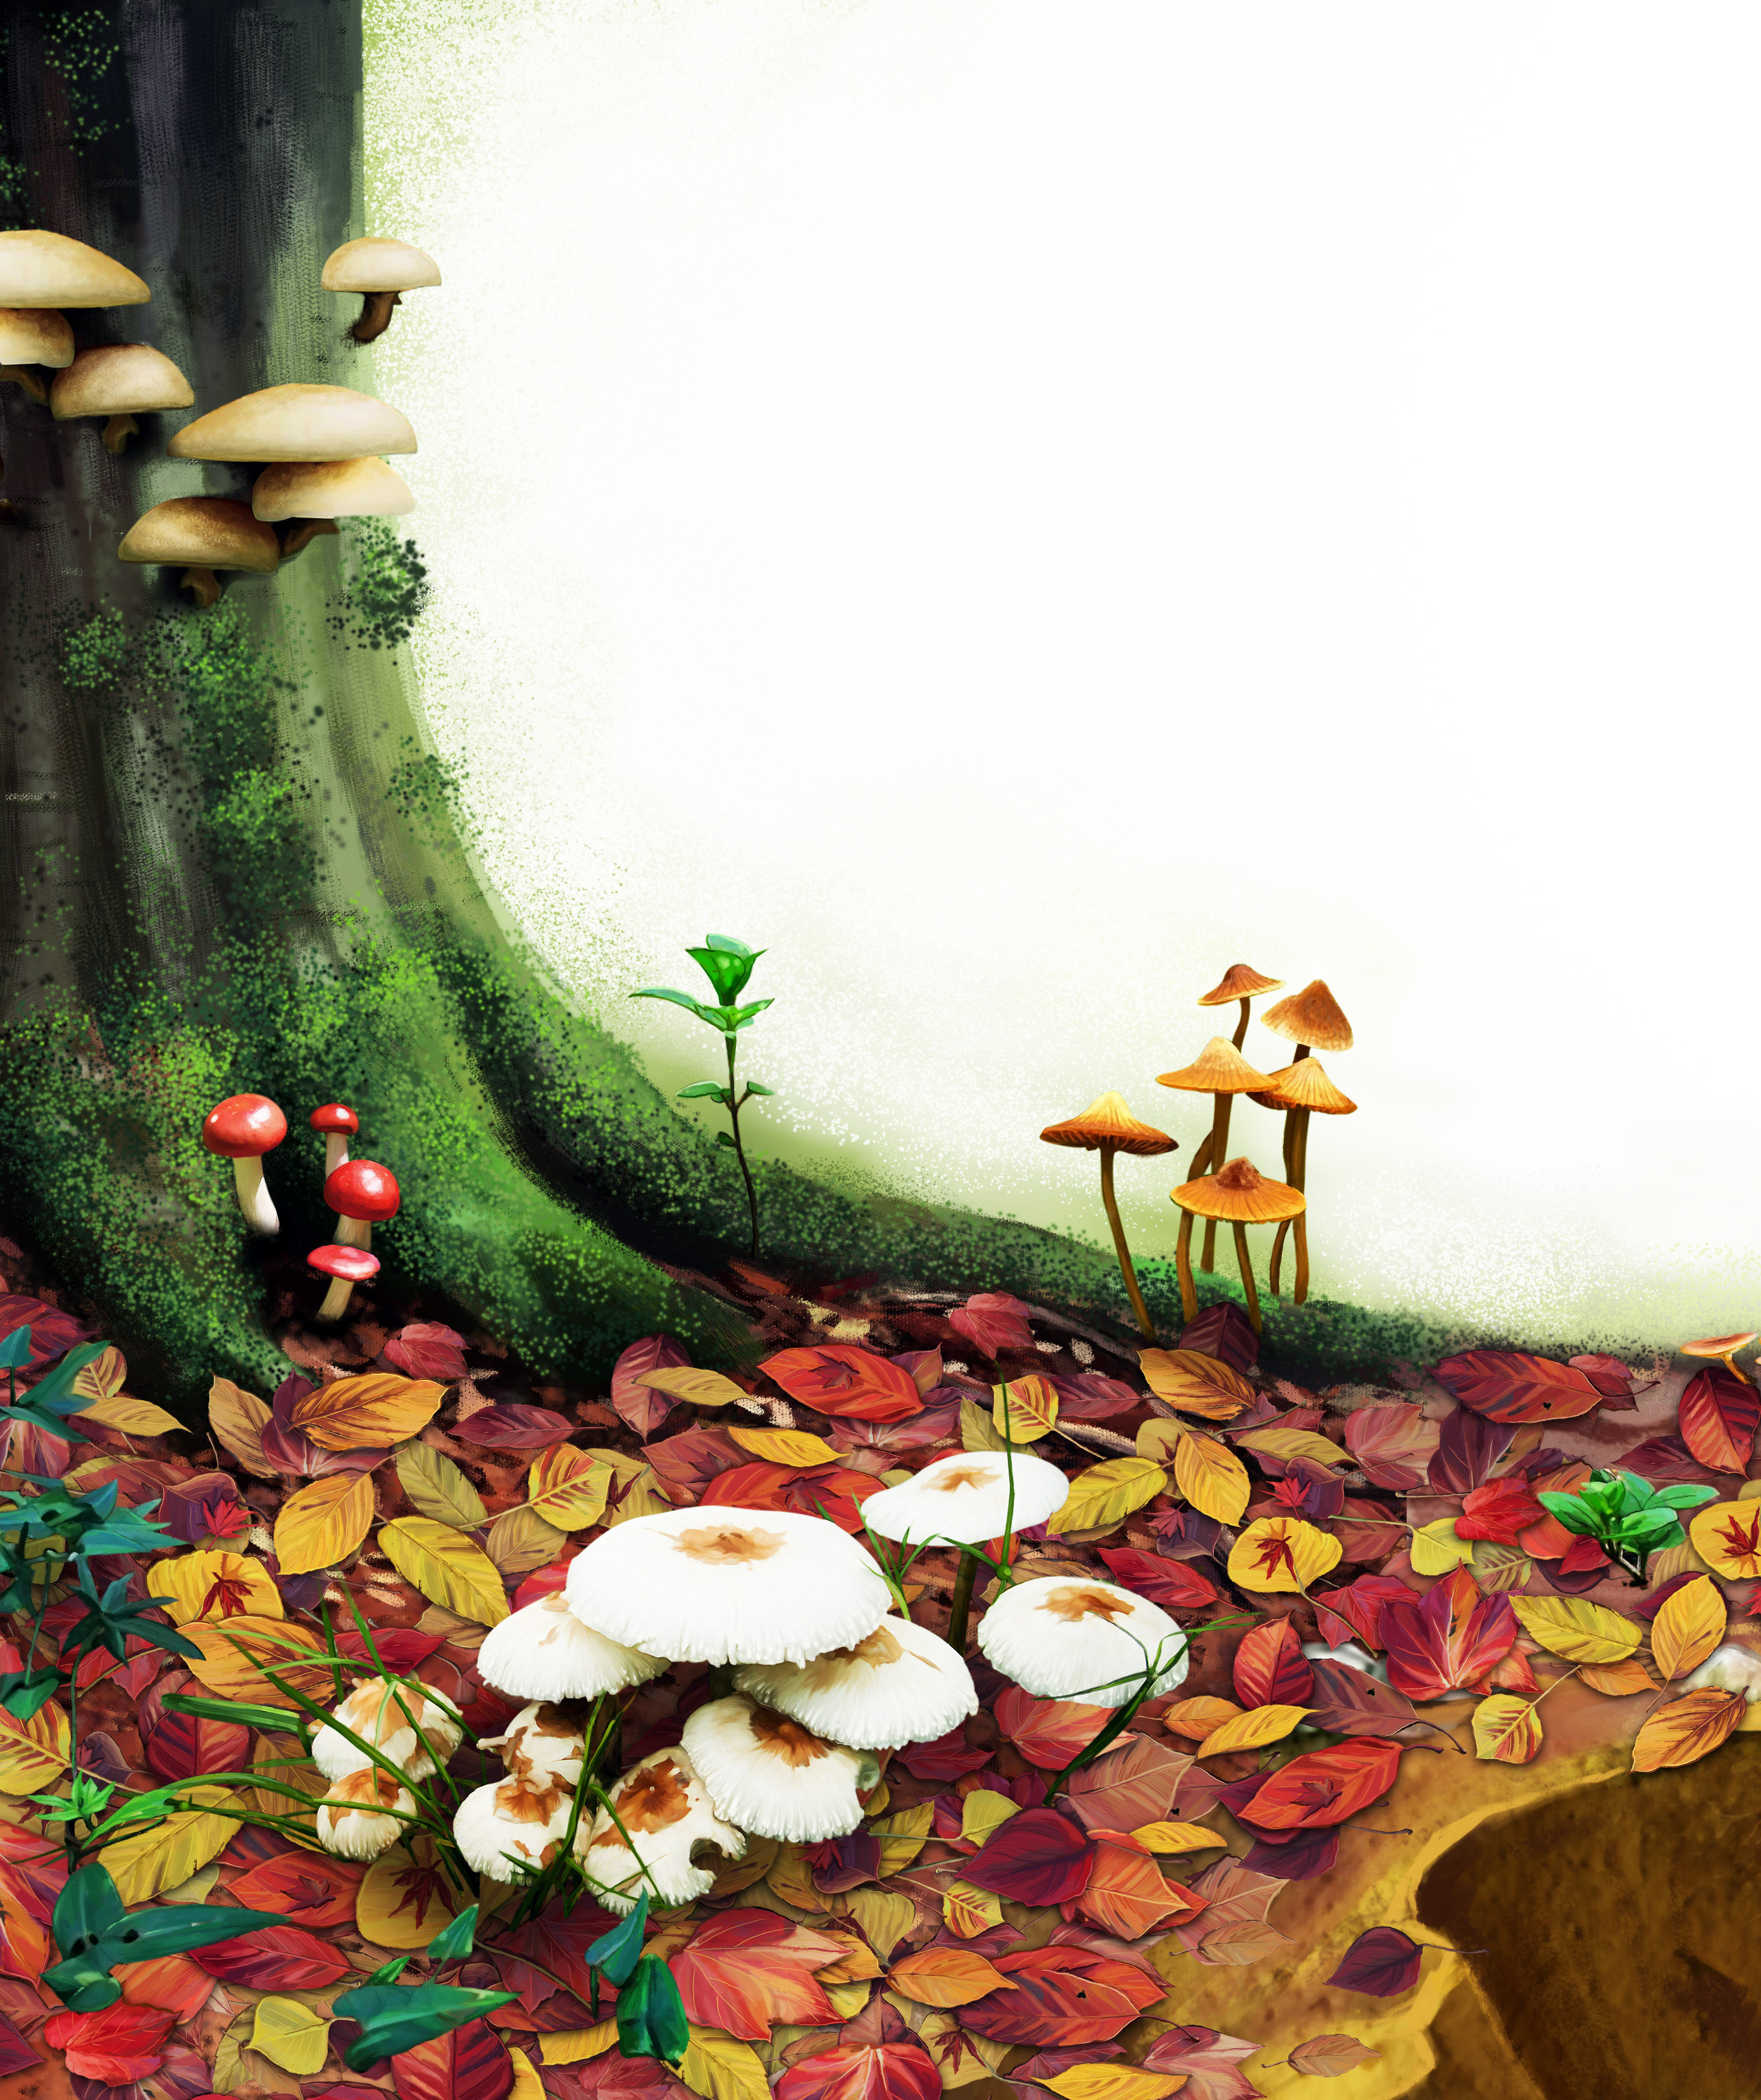 卡通小蘑菇图片素材-编号08093235-图行天下